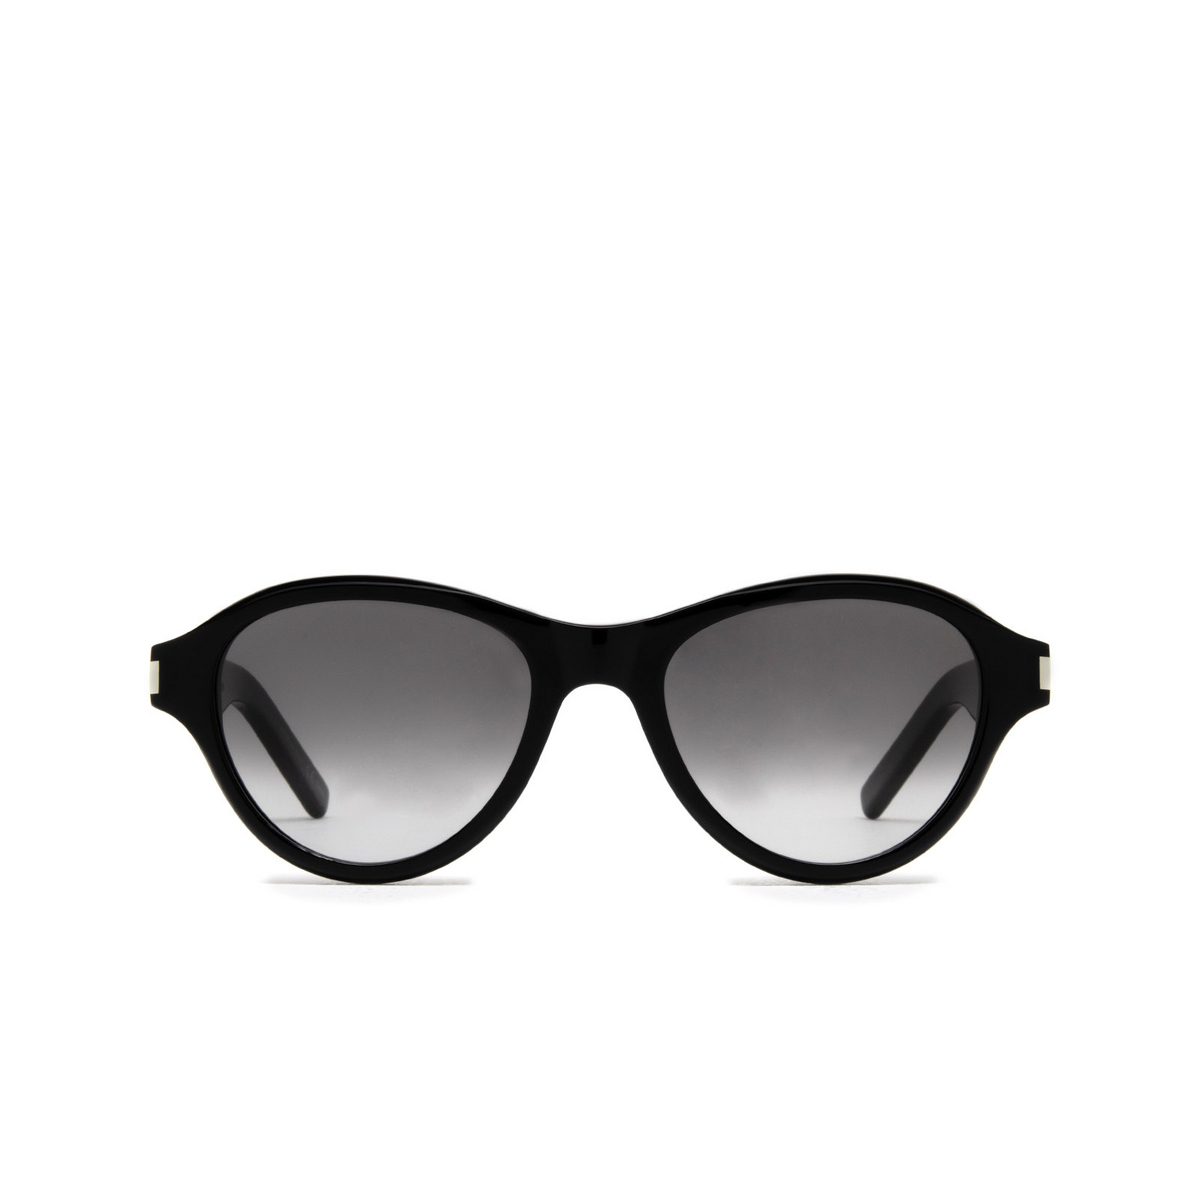 Saint Laurent® Oval Sunglasses: SL 520 SUNSET color Black 001 - front view.